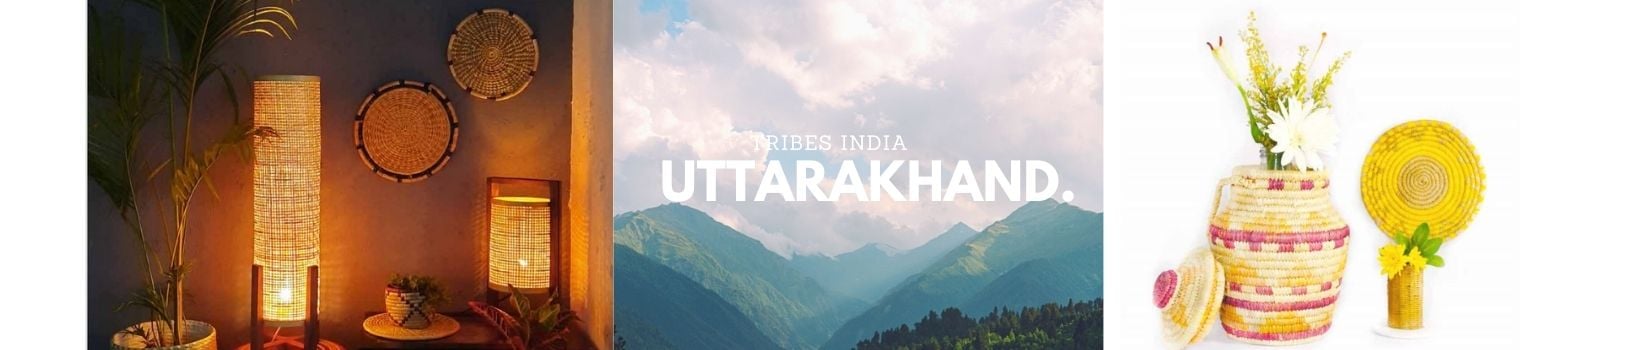 Tribes India Uttarakhand